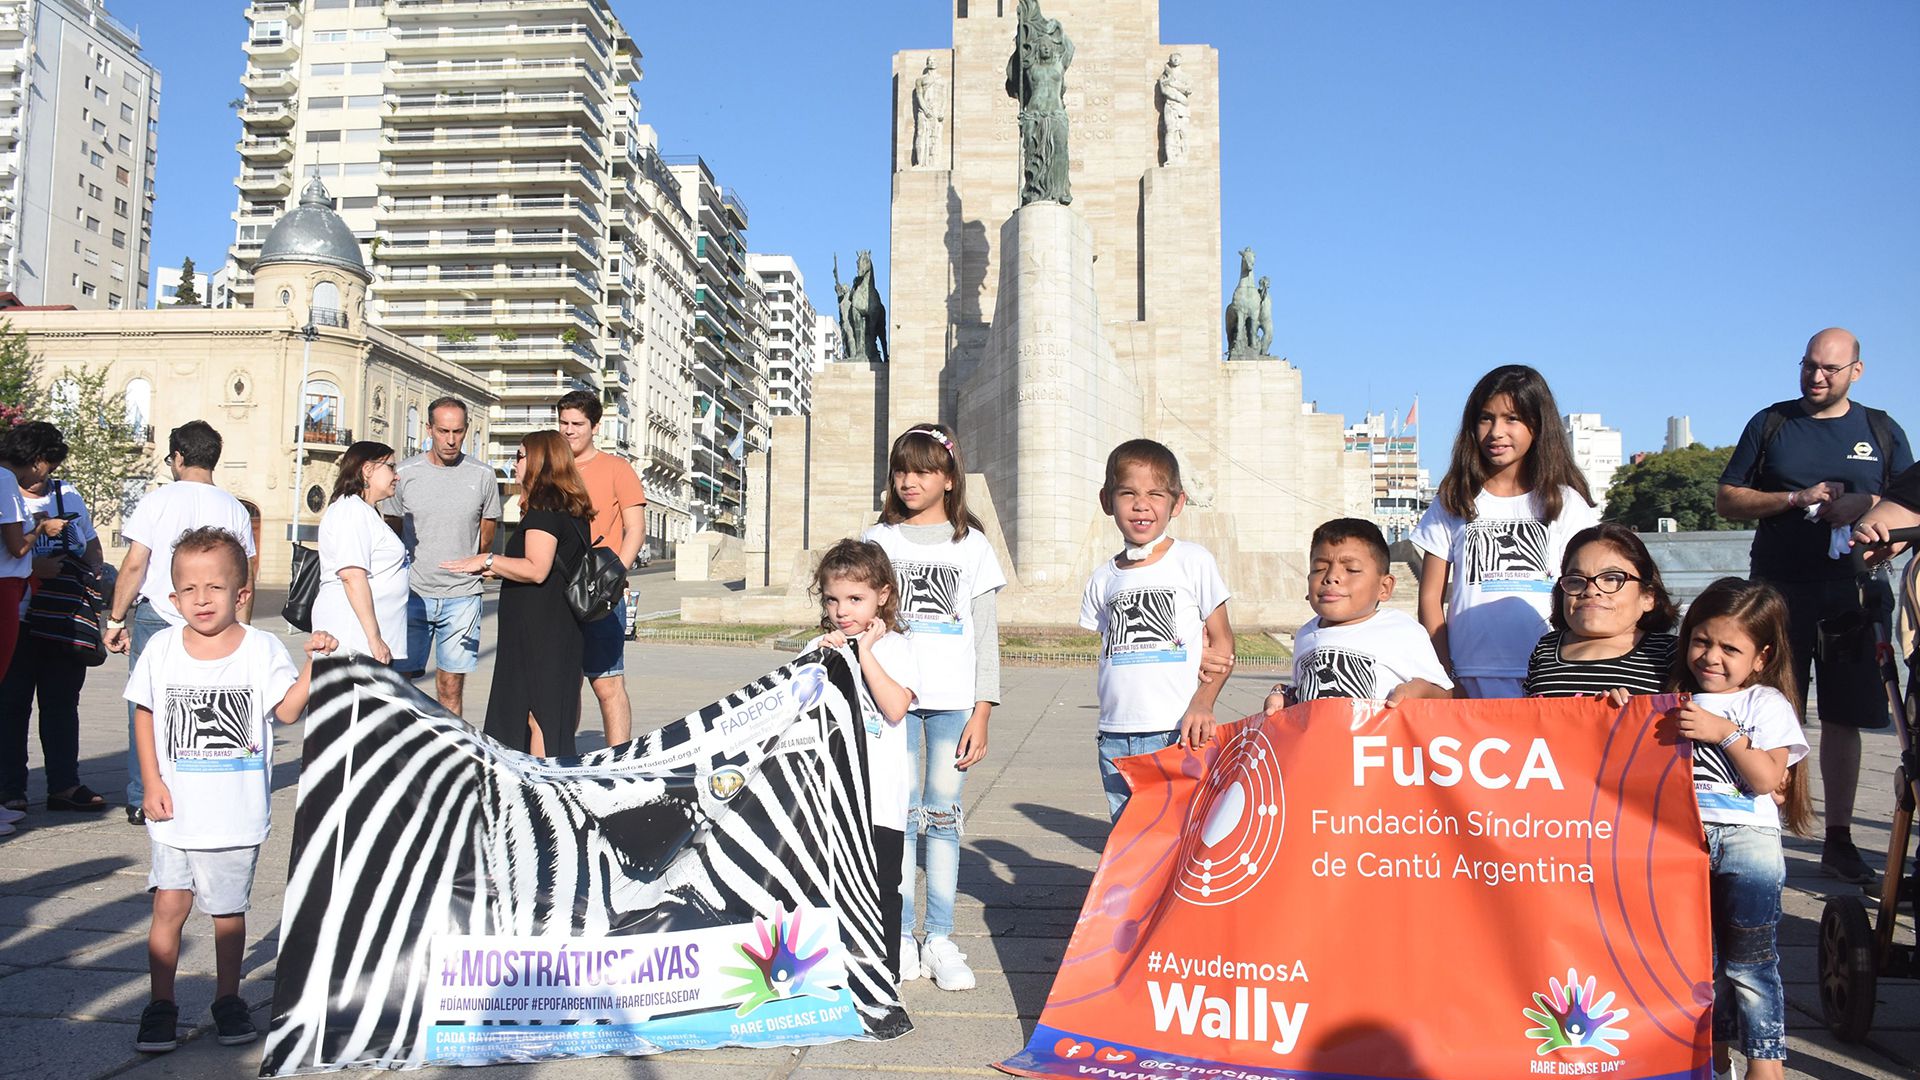 Wally junto a los otros niños con Síndrome de Cantú de la ciudad de Rosario que presenciaron el izamiento de la bandera hoy 29 de febrero 